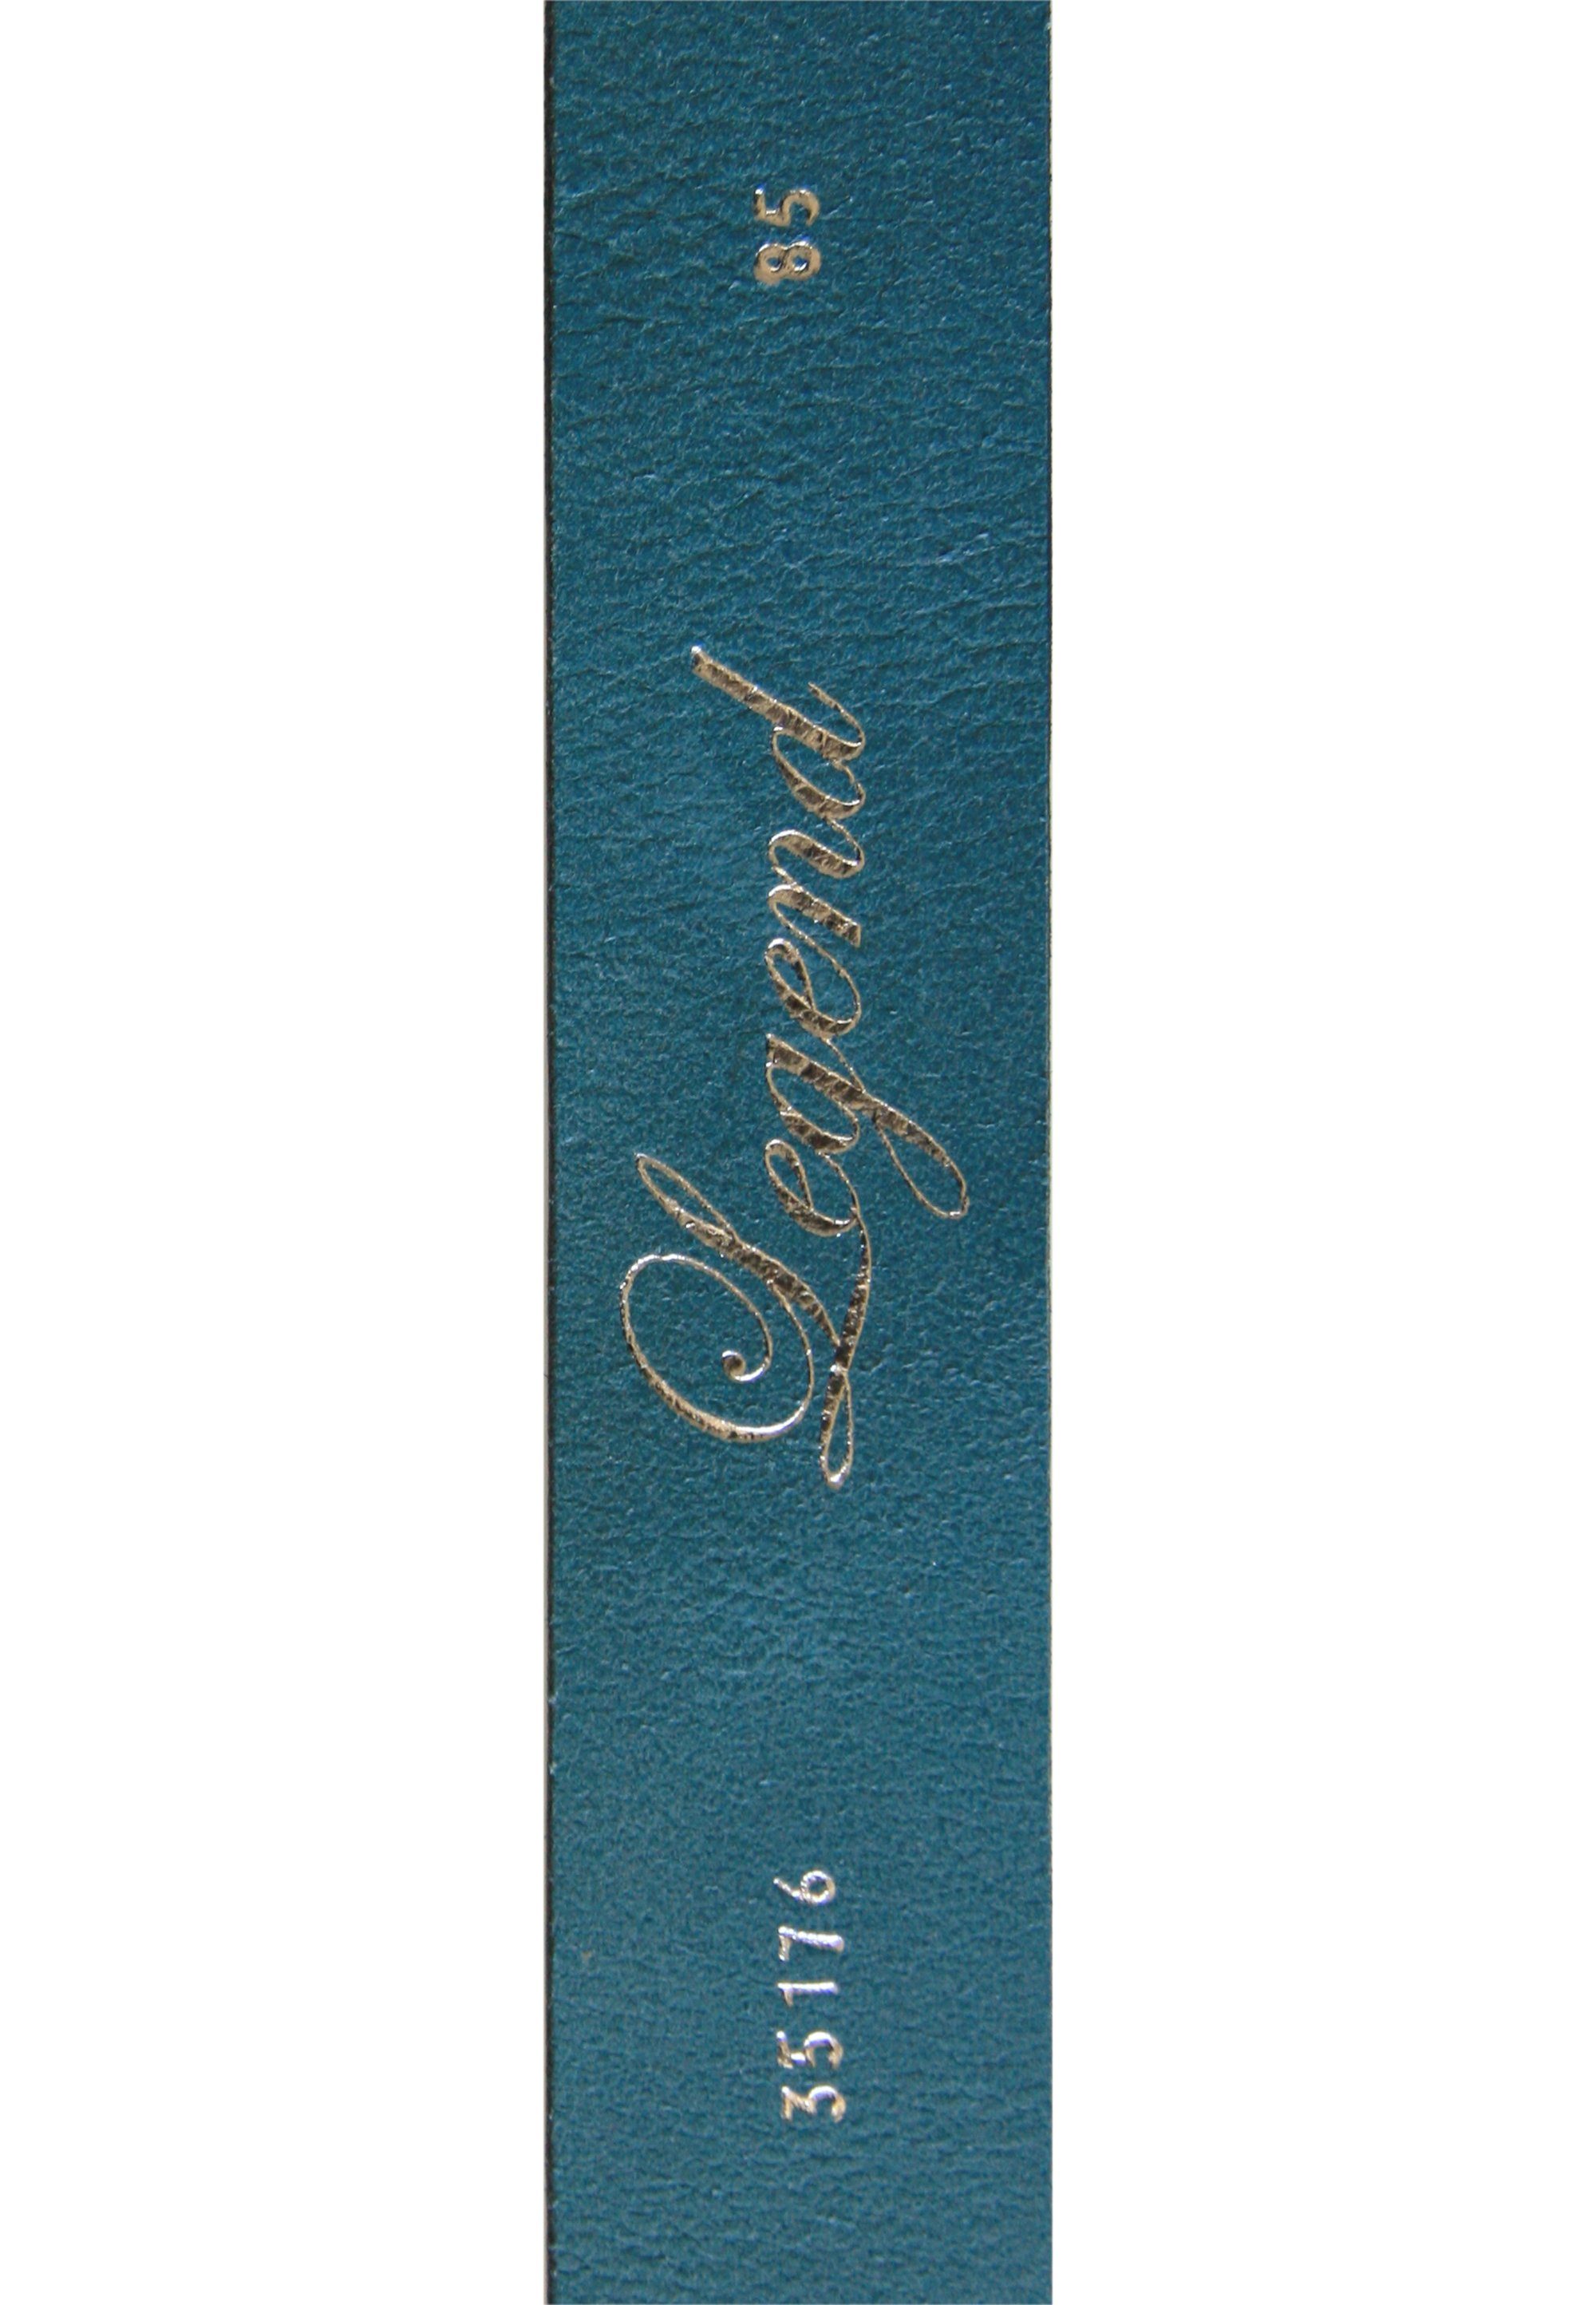 Rechteck-Schließe schlichter Ledergürtel blau mit Legend